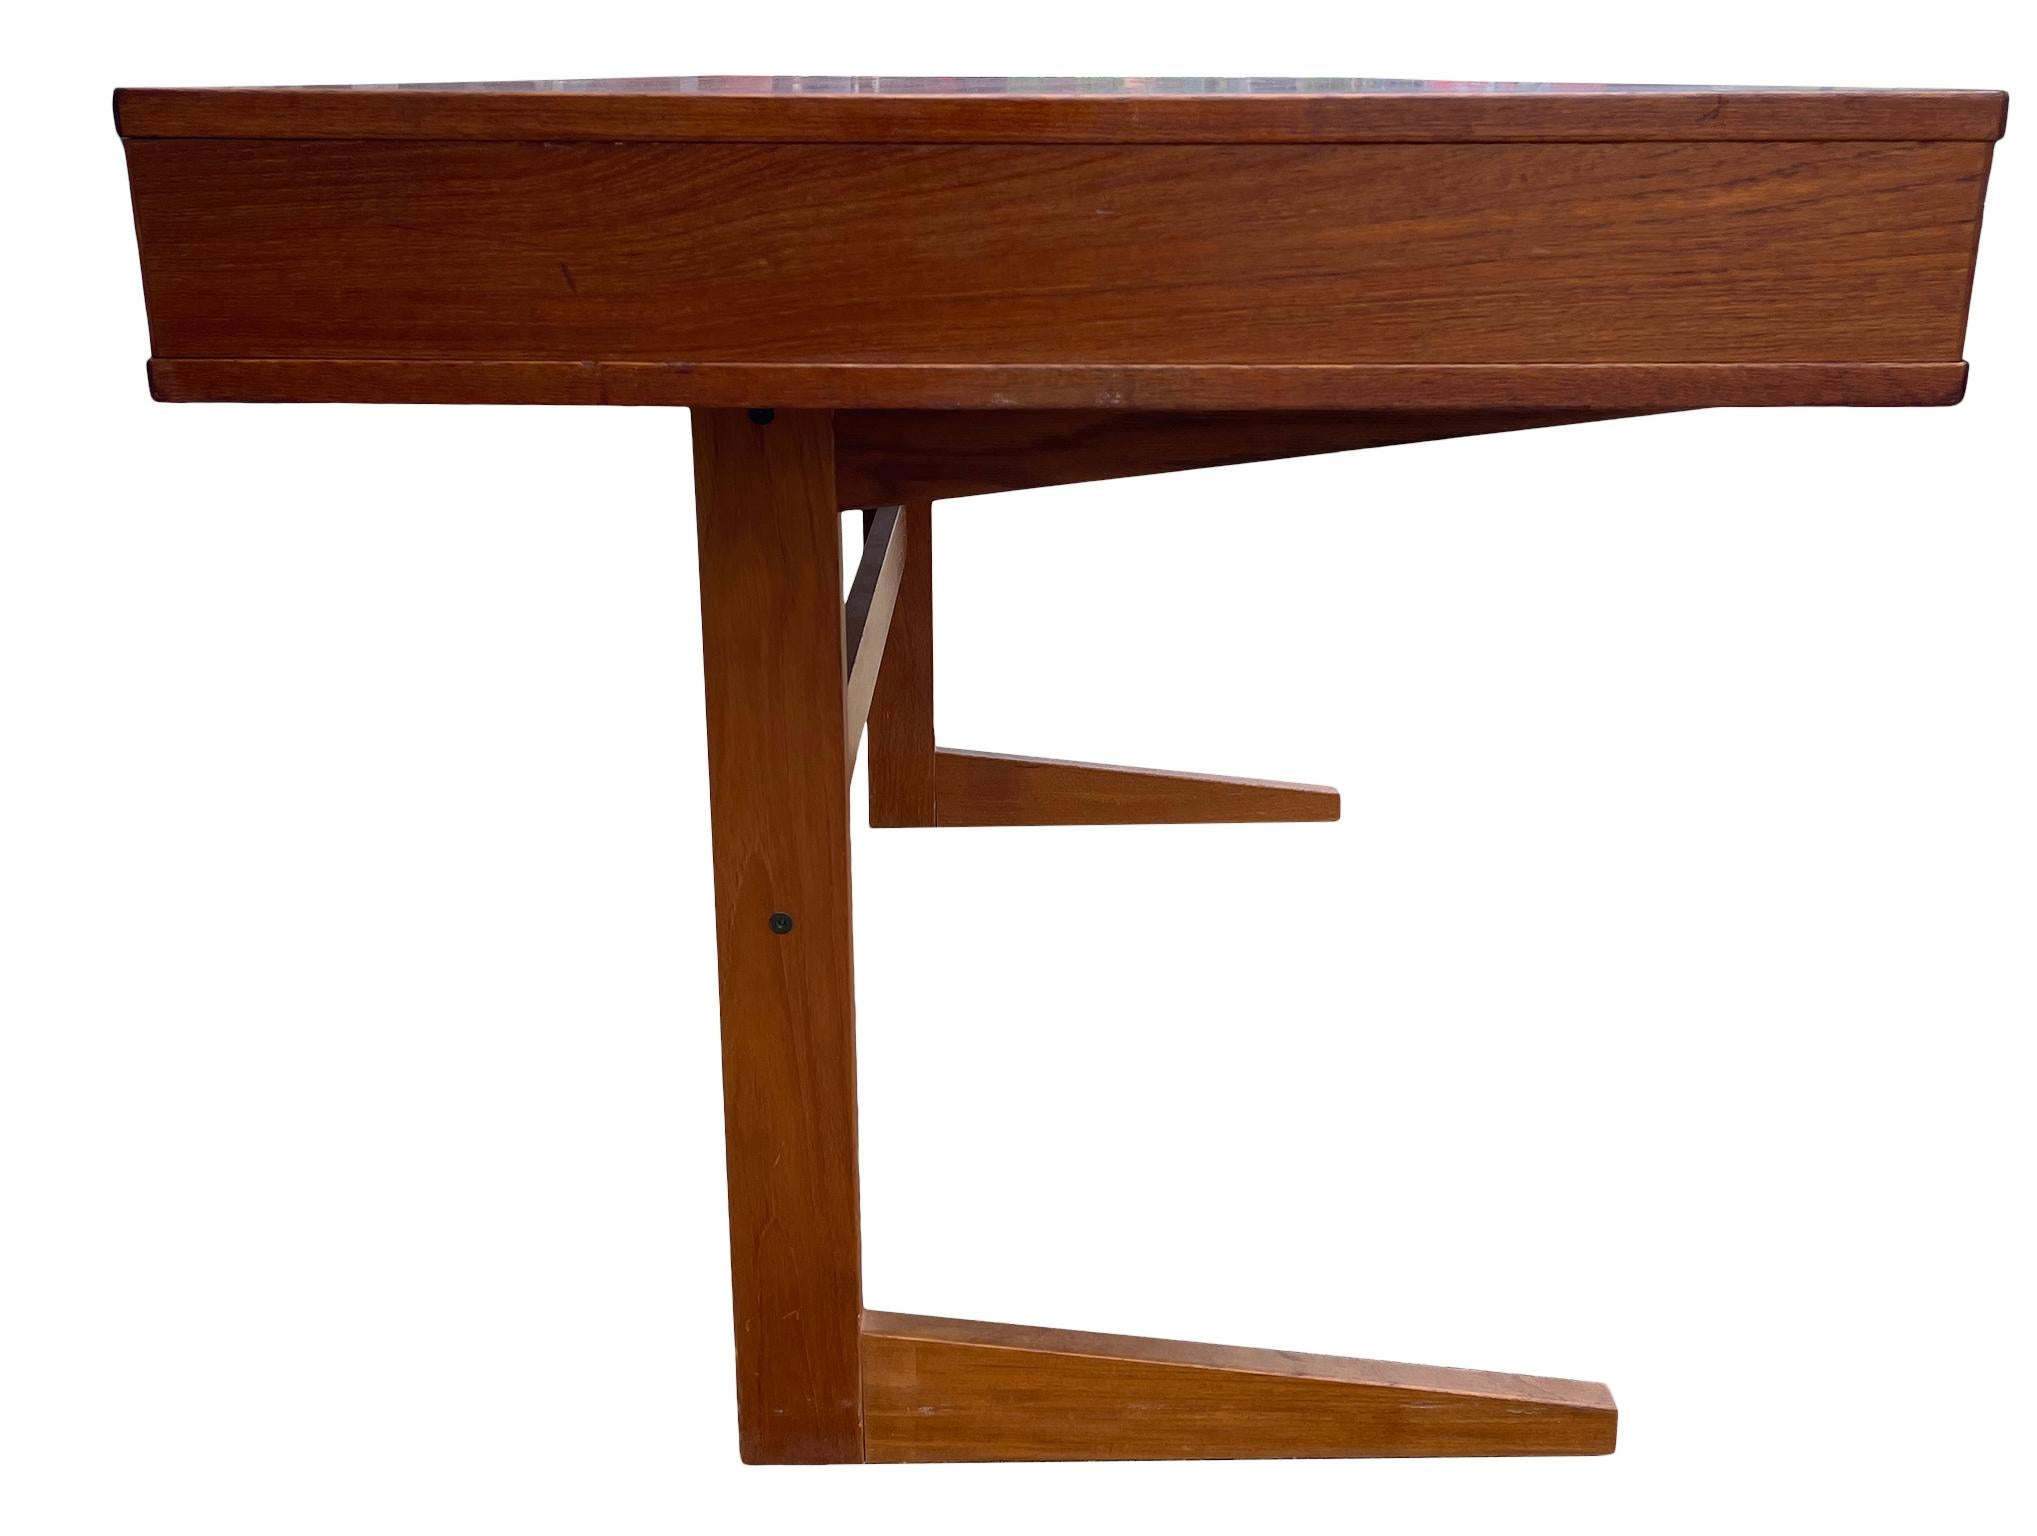 Midcentury Danish Modern teak Desk by Georg Petersens 3 drawer 2